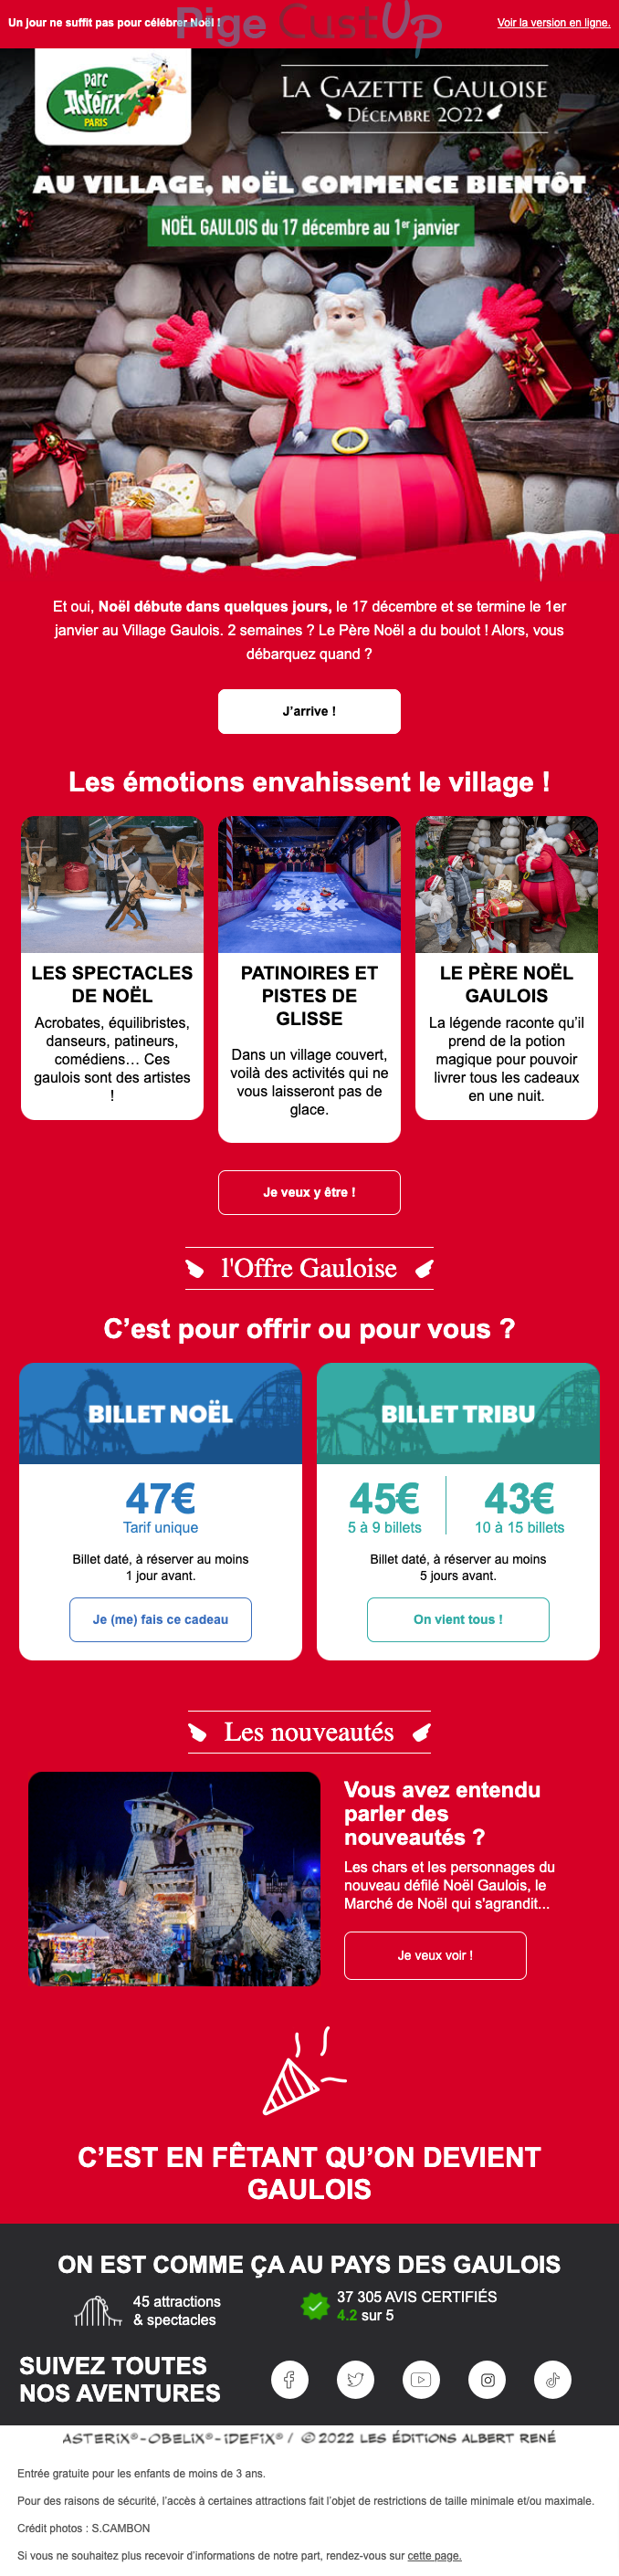 Exemple de Type de media  e-mailing - Parc Astérix - Marketing relationnel - Calendaire (Noël, St valentin, Vœux, …)